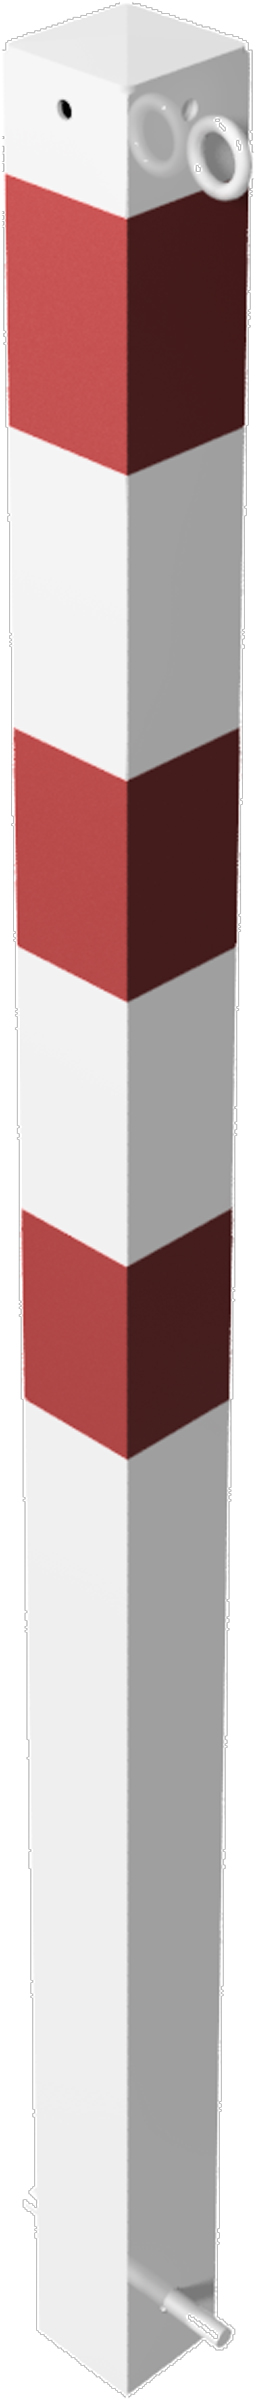 Schake Absperrpfosten OE 70 x 70 mm mit 2 Ösen weiß | rot